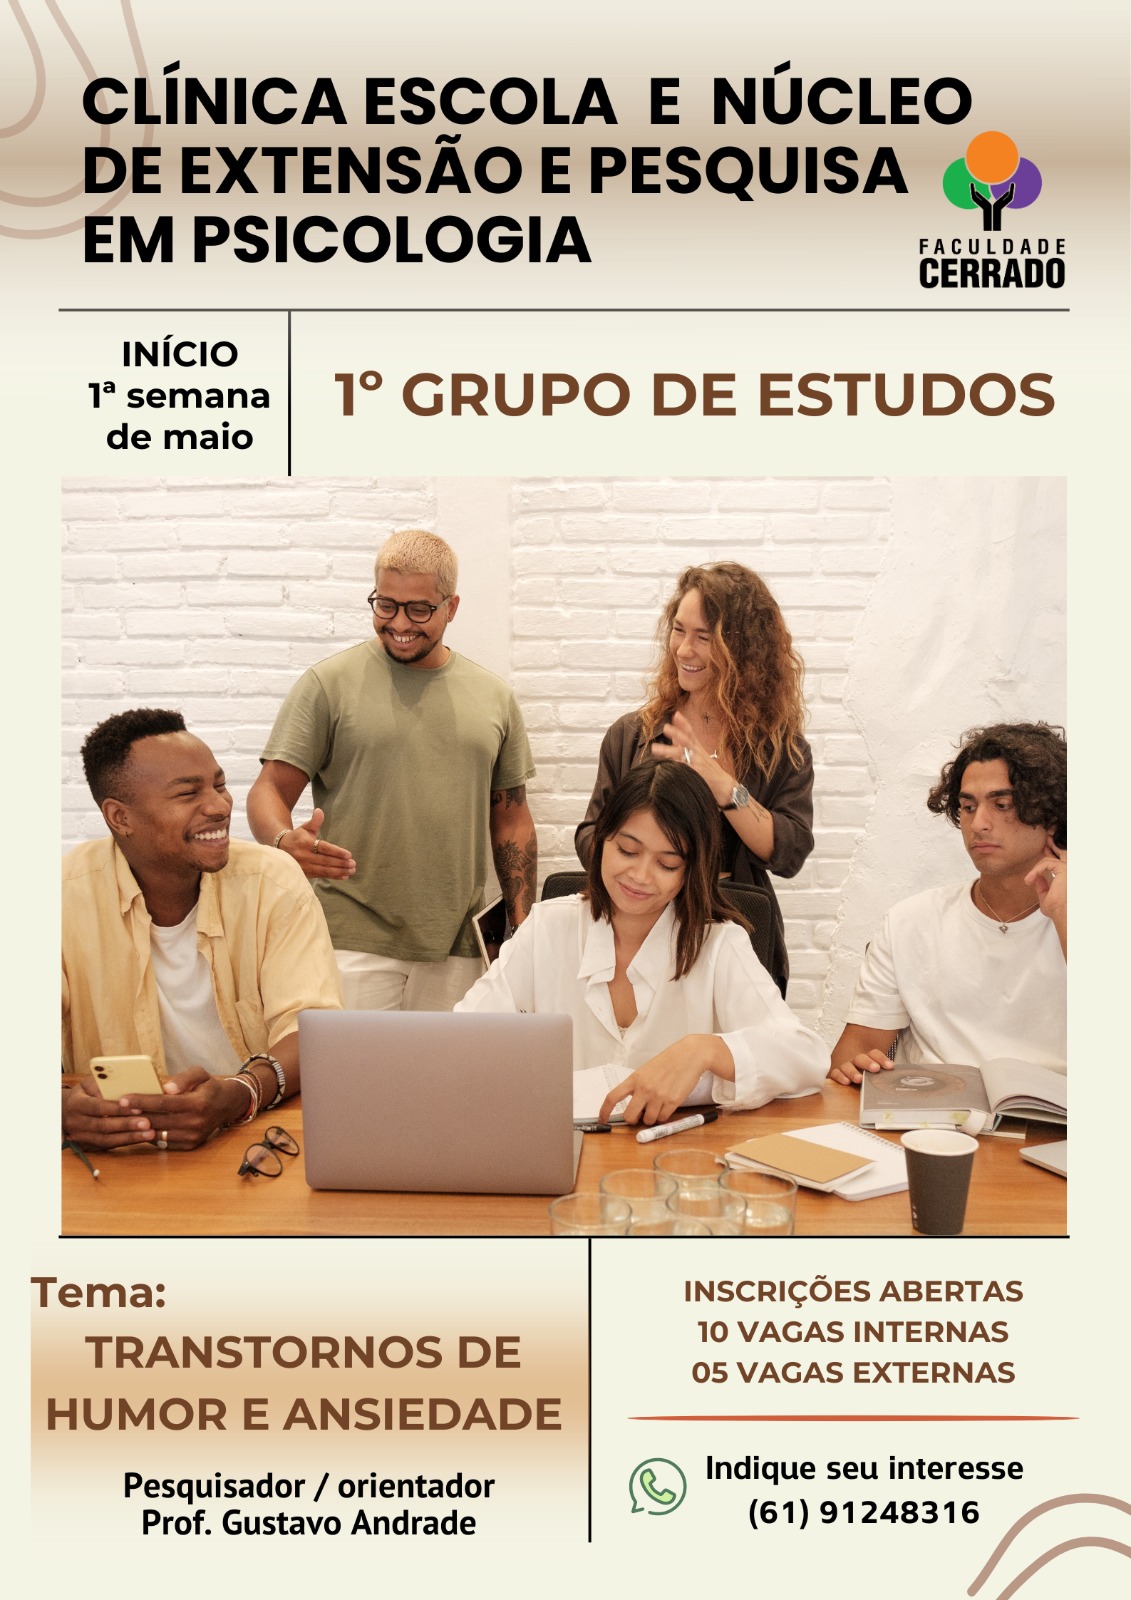 Clínica Escolar de Extensão e Pesquisa em Psicologia Faculdade Cerrado